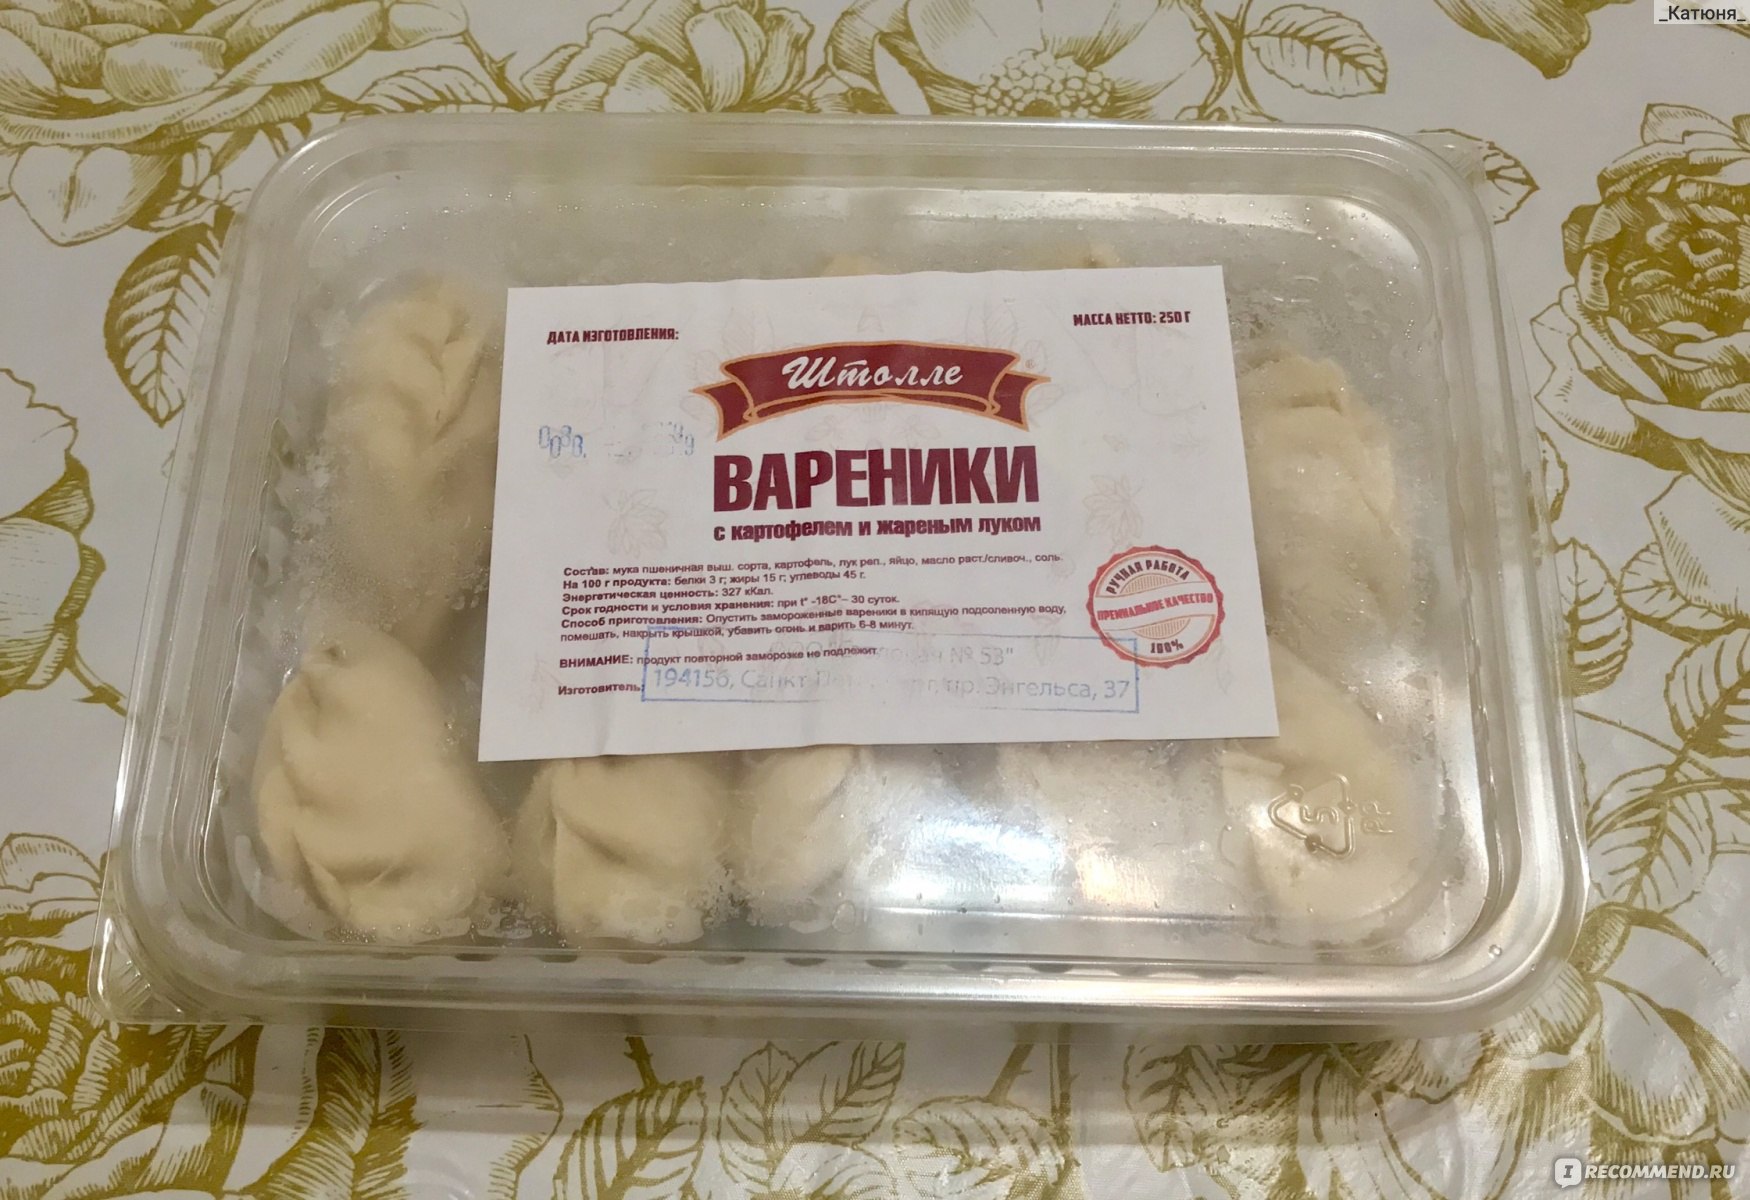 Традиционный украинский десерт - вареники с вишней